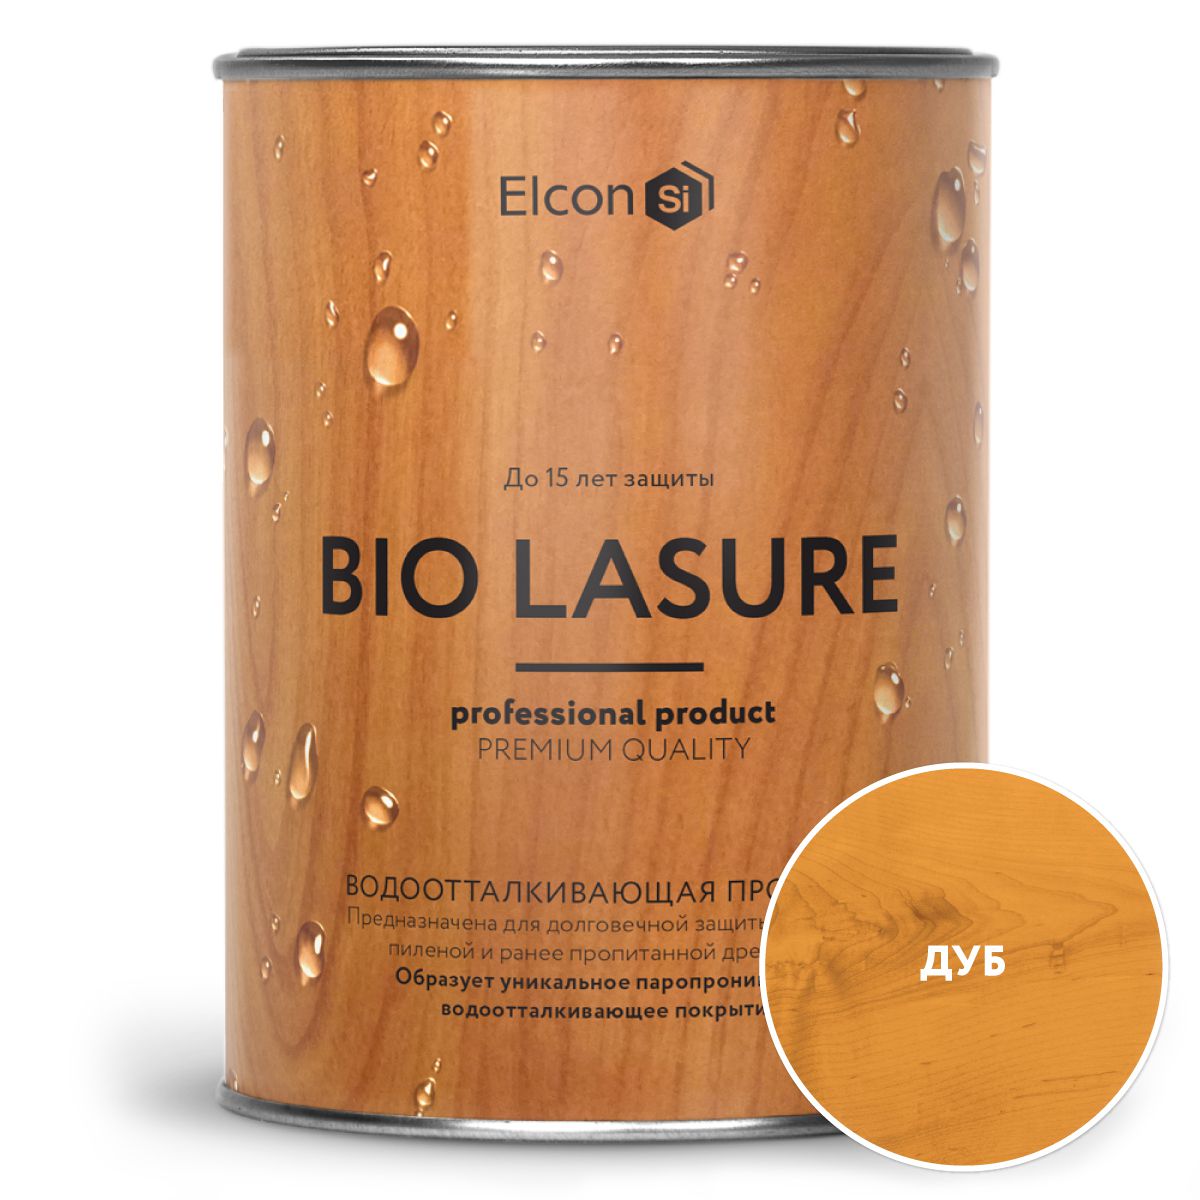 Водоотталкивающая пропитка для защиты дерева, Elcon Bio Lasure, дуб 0,9л пропитка для дерева elcon bio lasure водоотталкивающая сосна 9 л